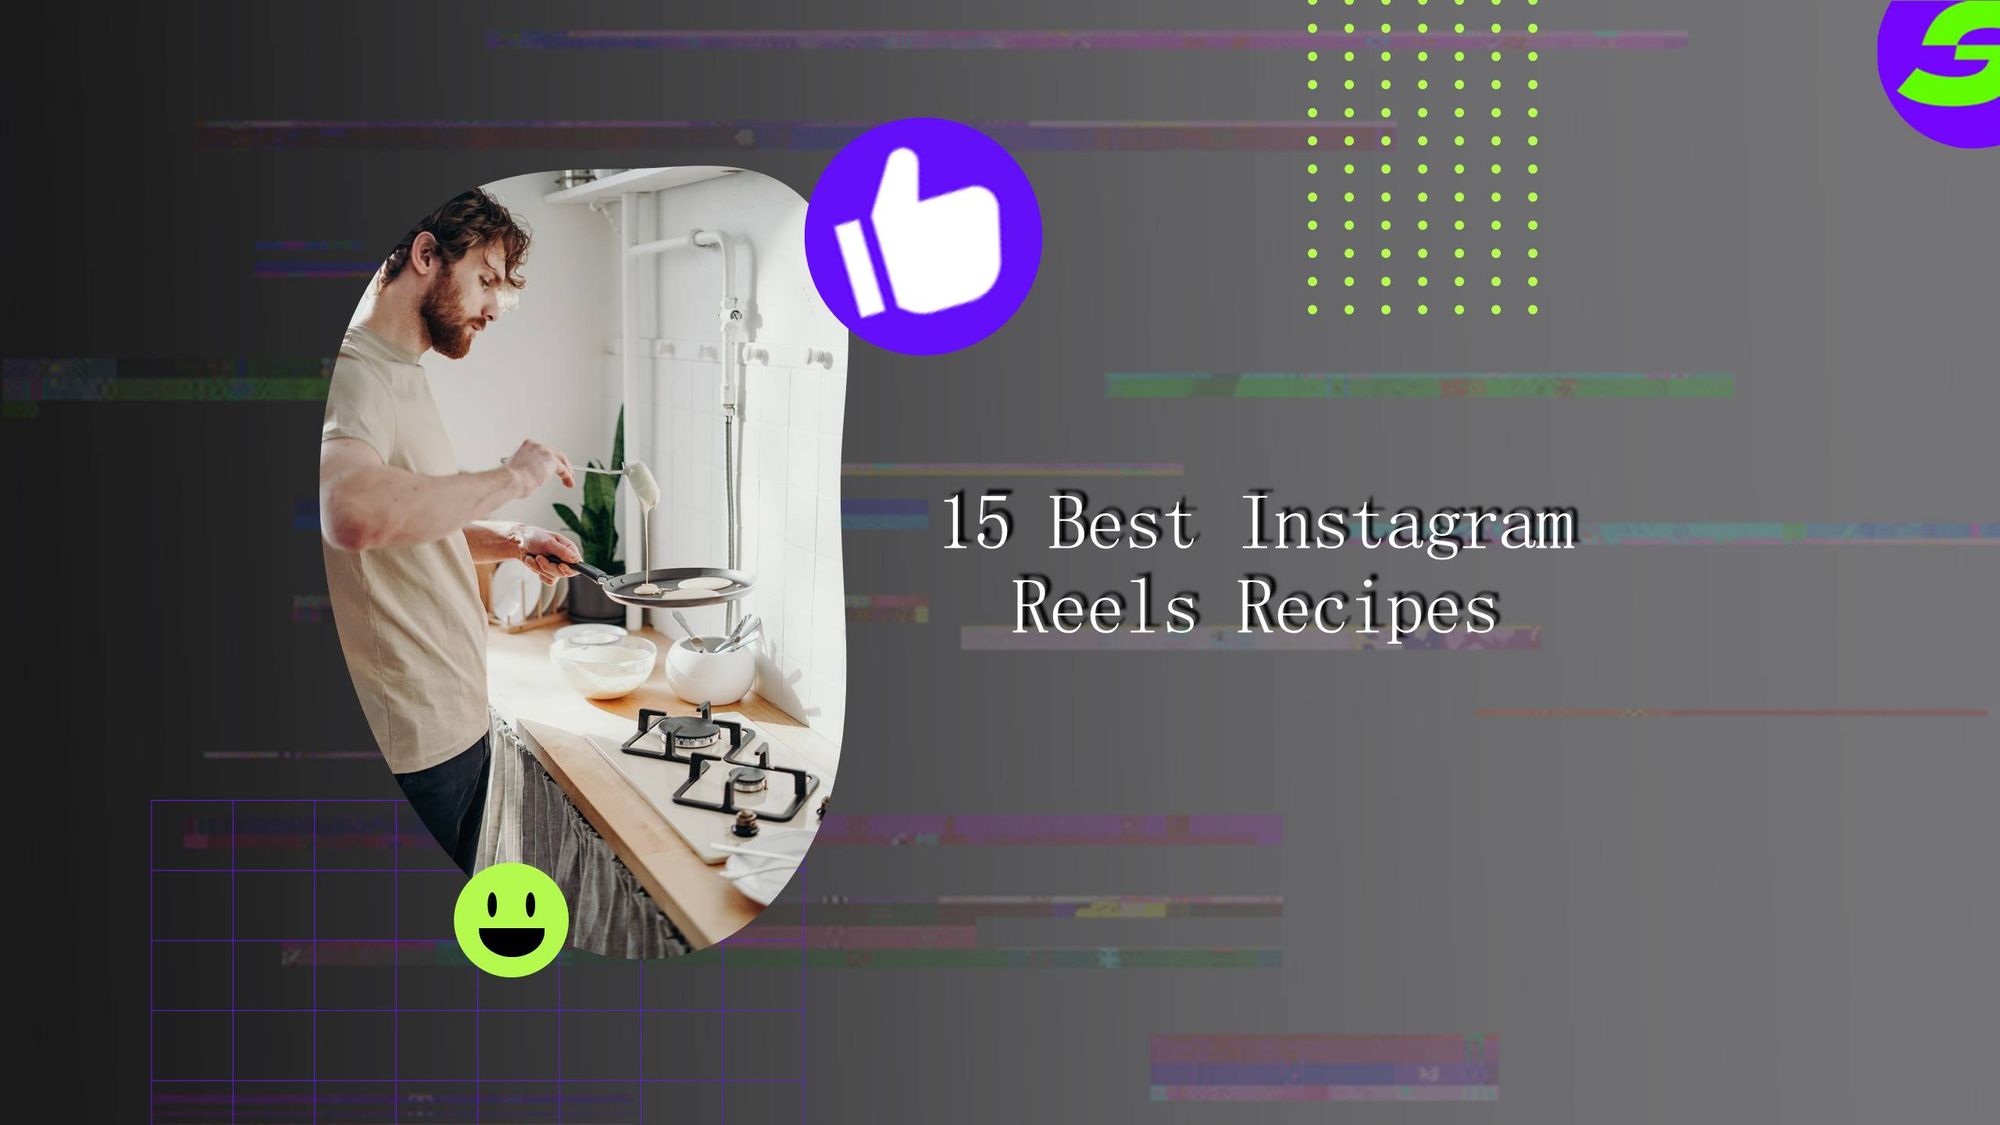 Top 15 Instagram Reels Recipes 